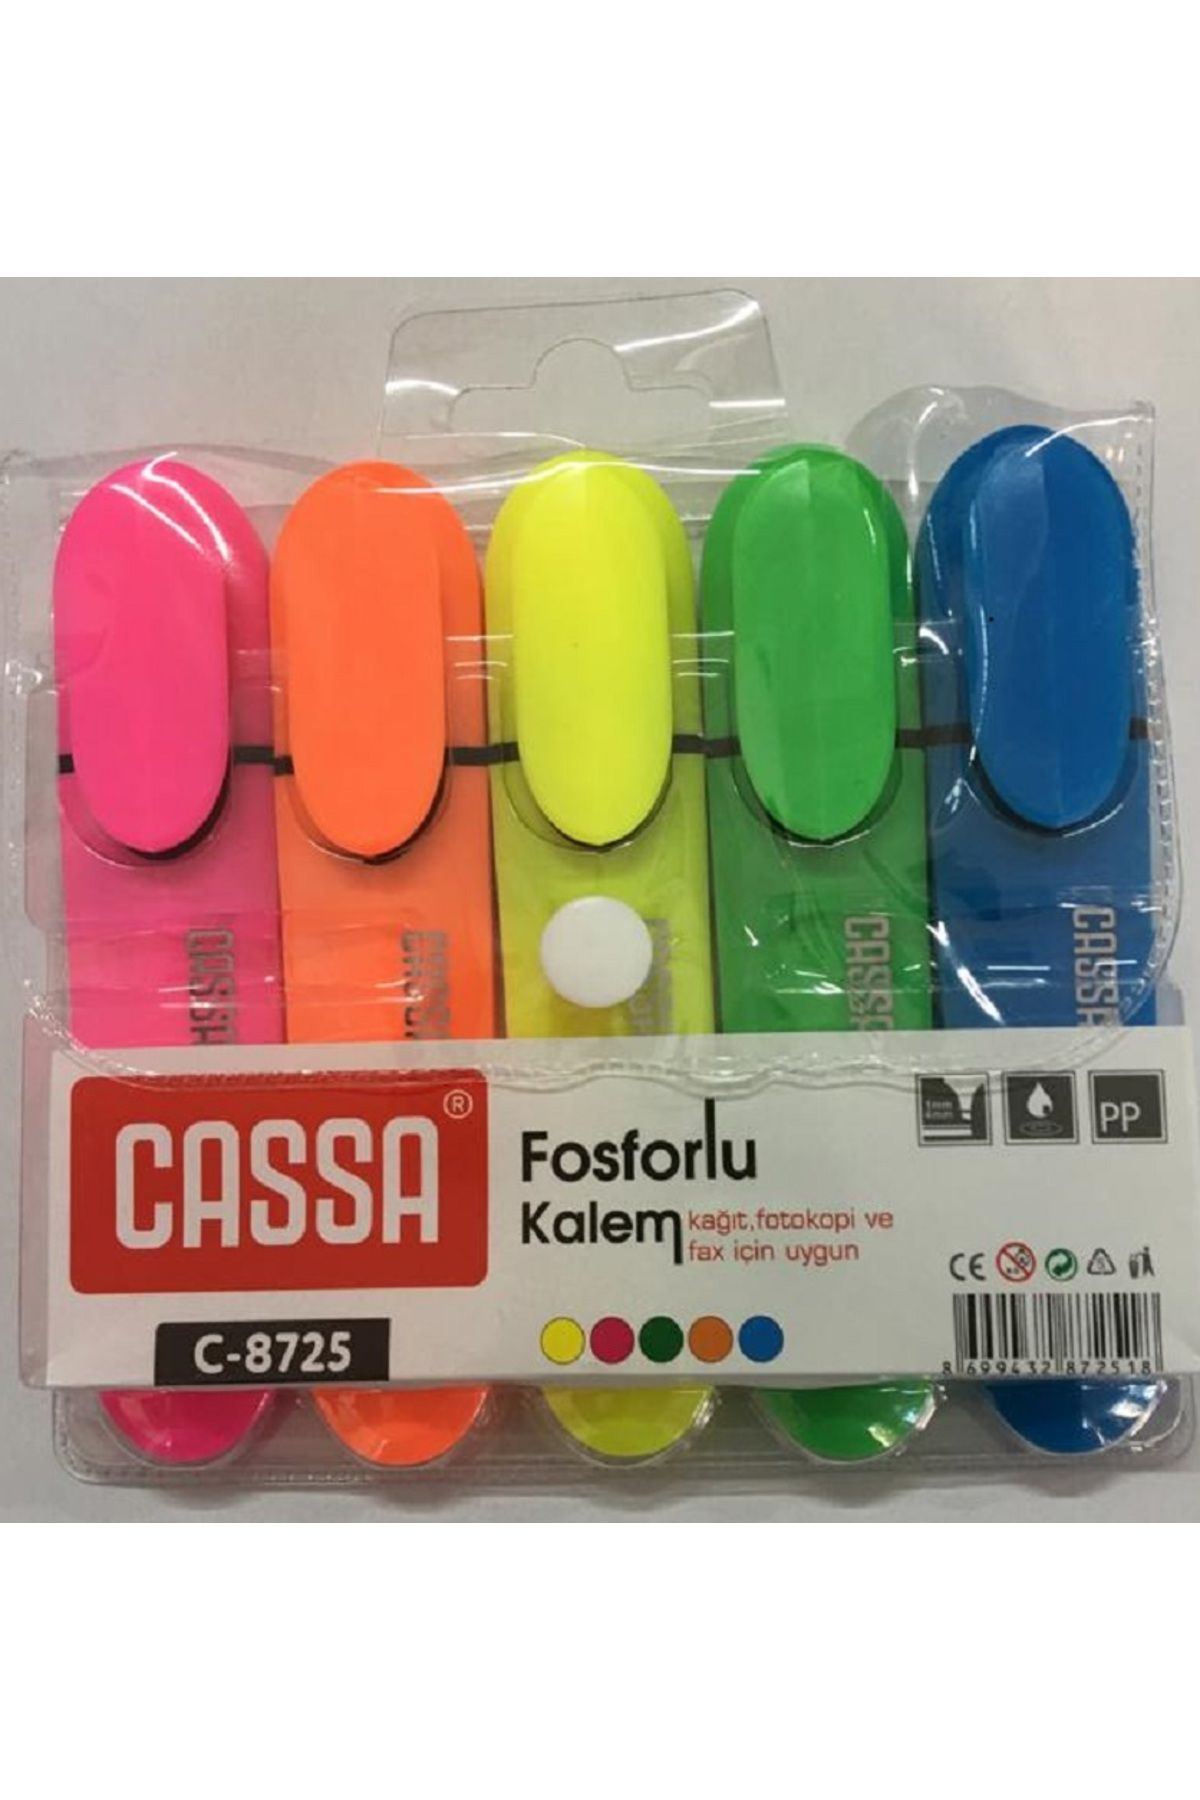 Cassa C-8725 FOSFORLU KALEM 5'Lİ PVC PAKET